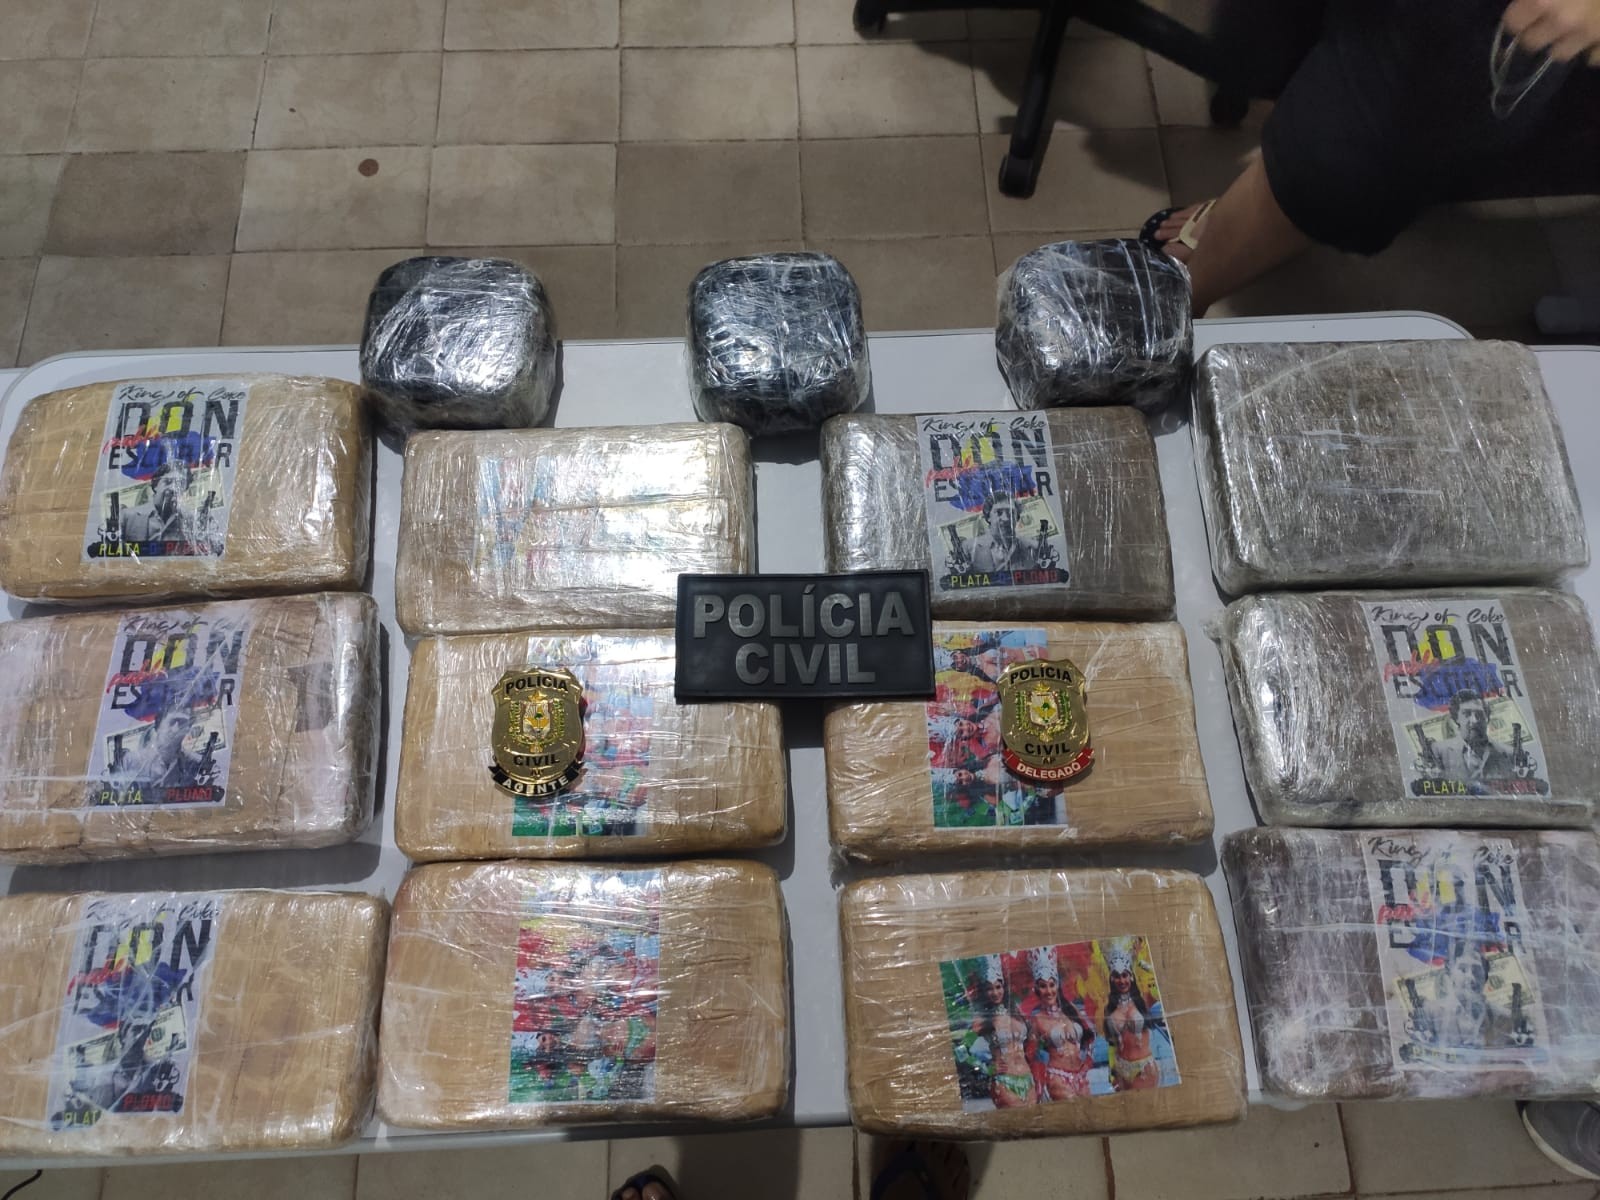 Passageiro de embarcação é preso com 17 quilos de drogas na bagagem, em Laranjal do Jari 